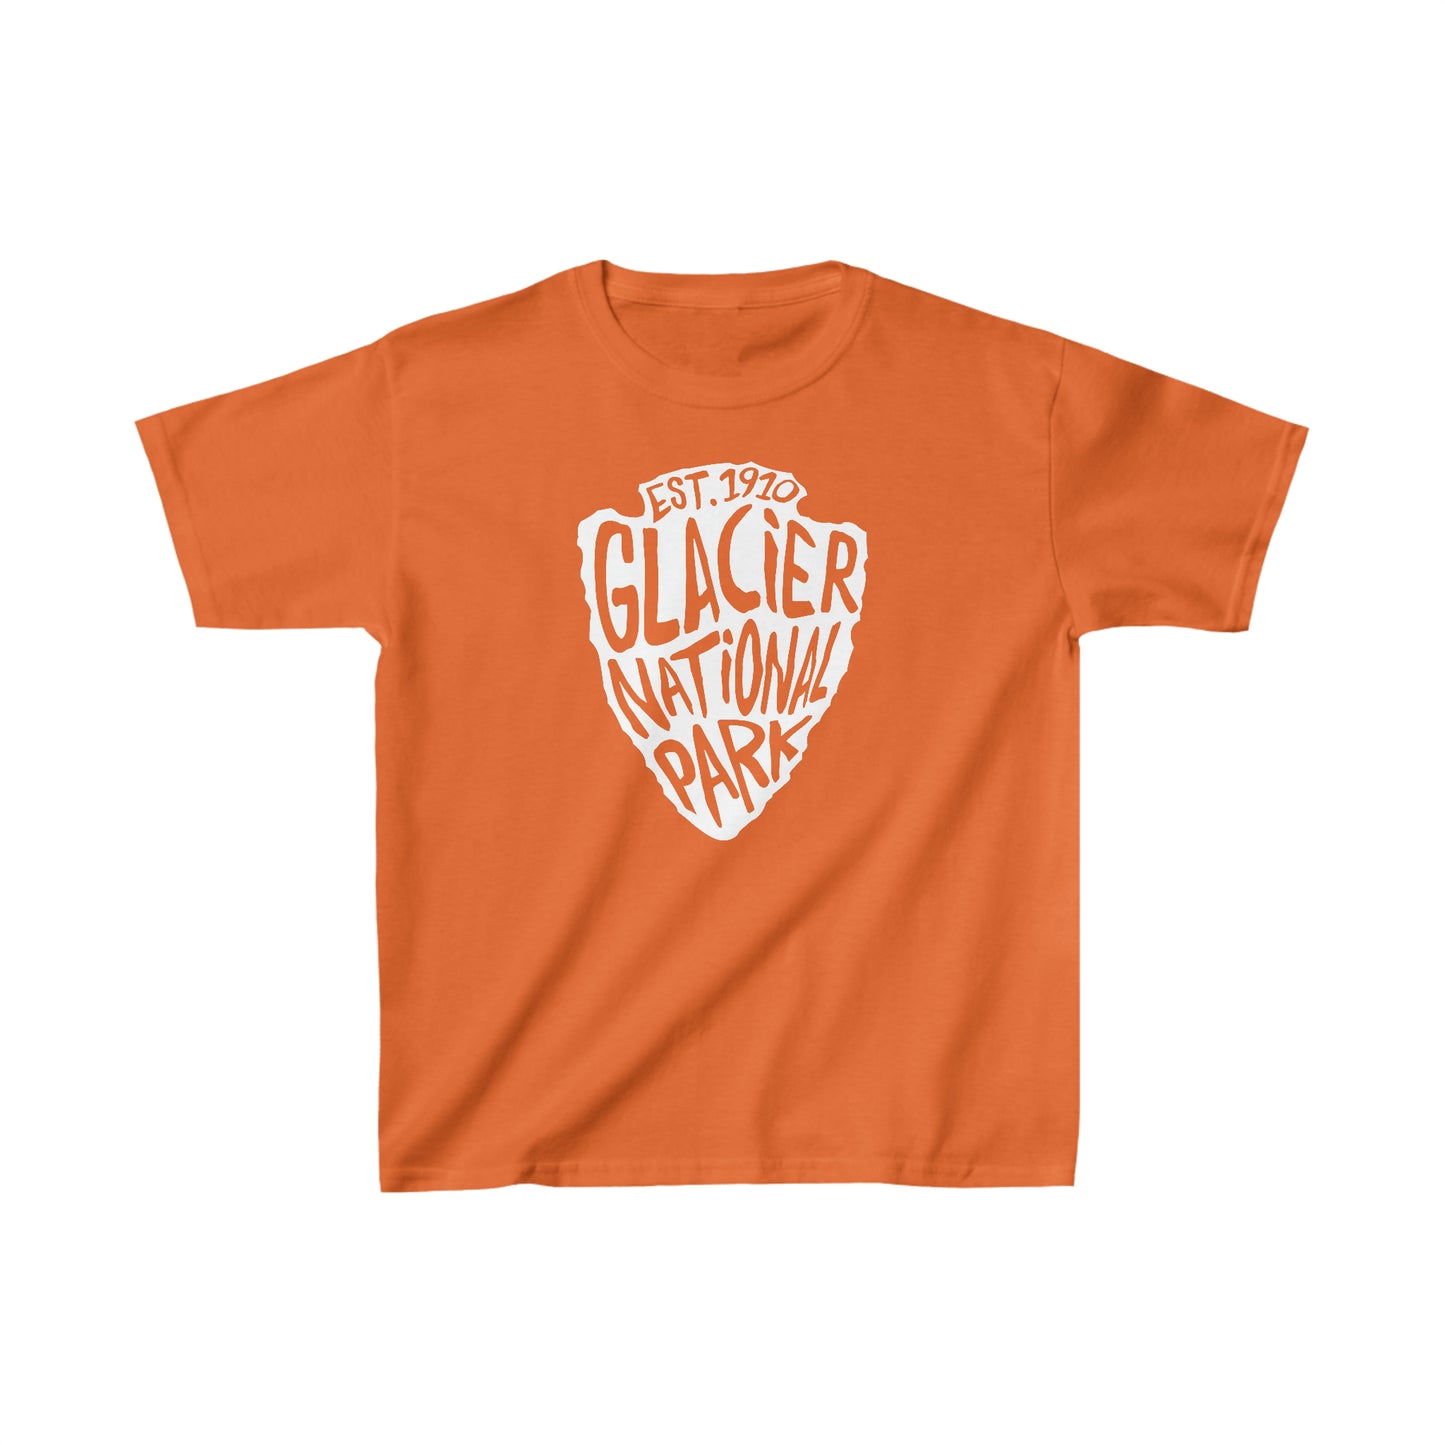 Glacier National Park Child T-Shirt - Arrowhead Design